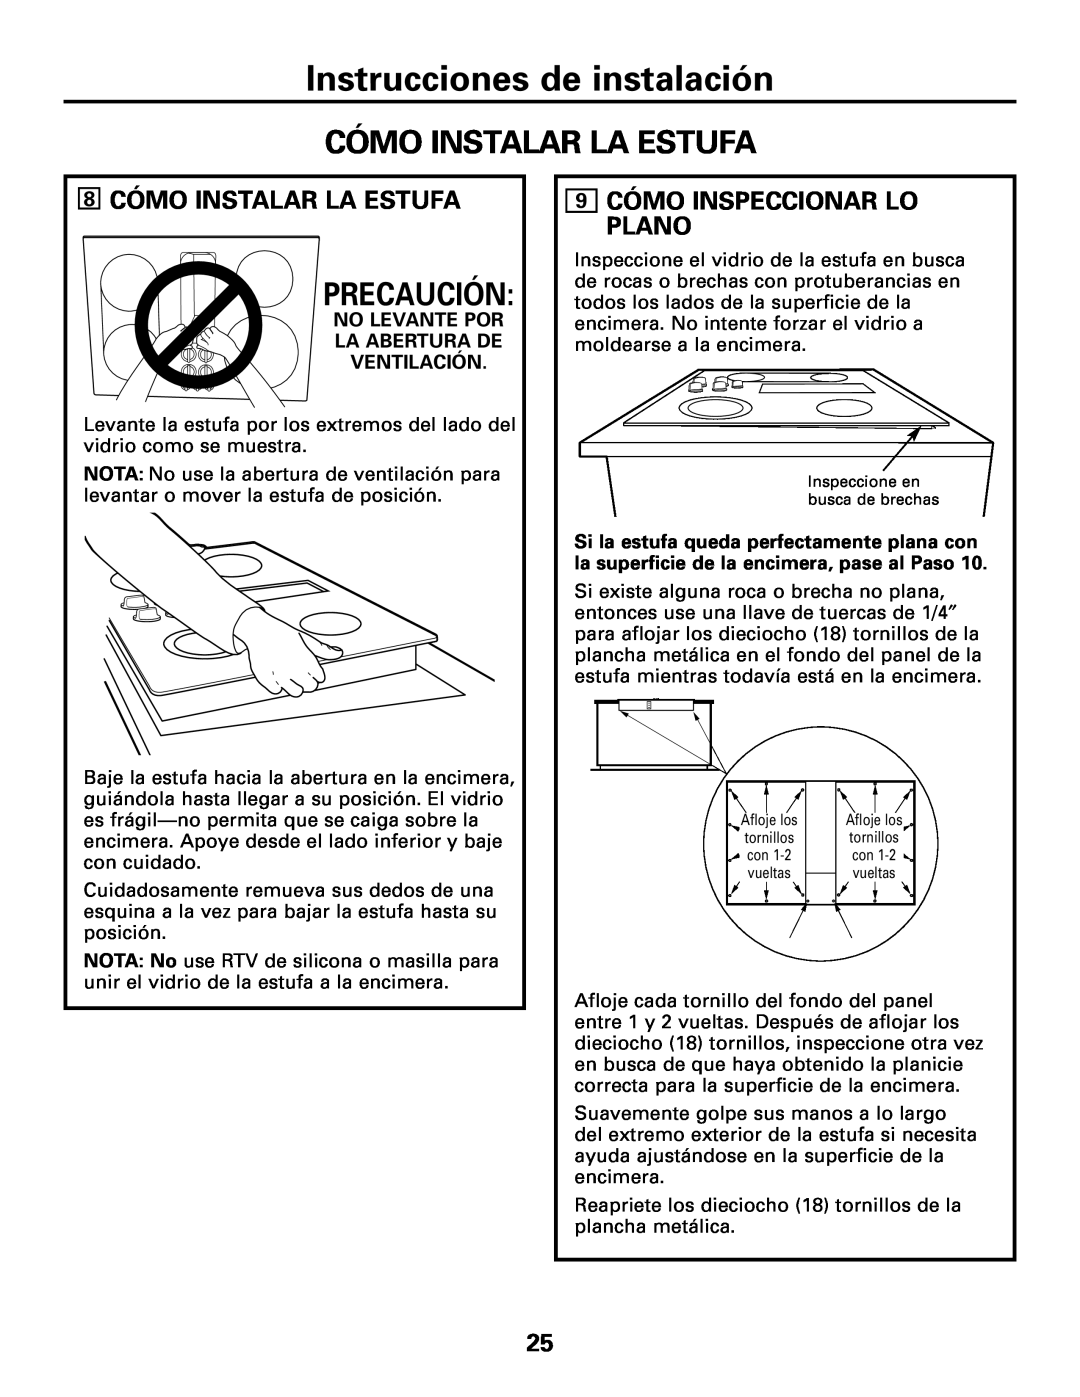 GE JGP989 manual Cómo Instalar La Estufa, Precaución, Instrucciones de instalación, 8CÓMO INSTALAR LA ESTUFA 